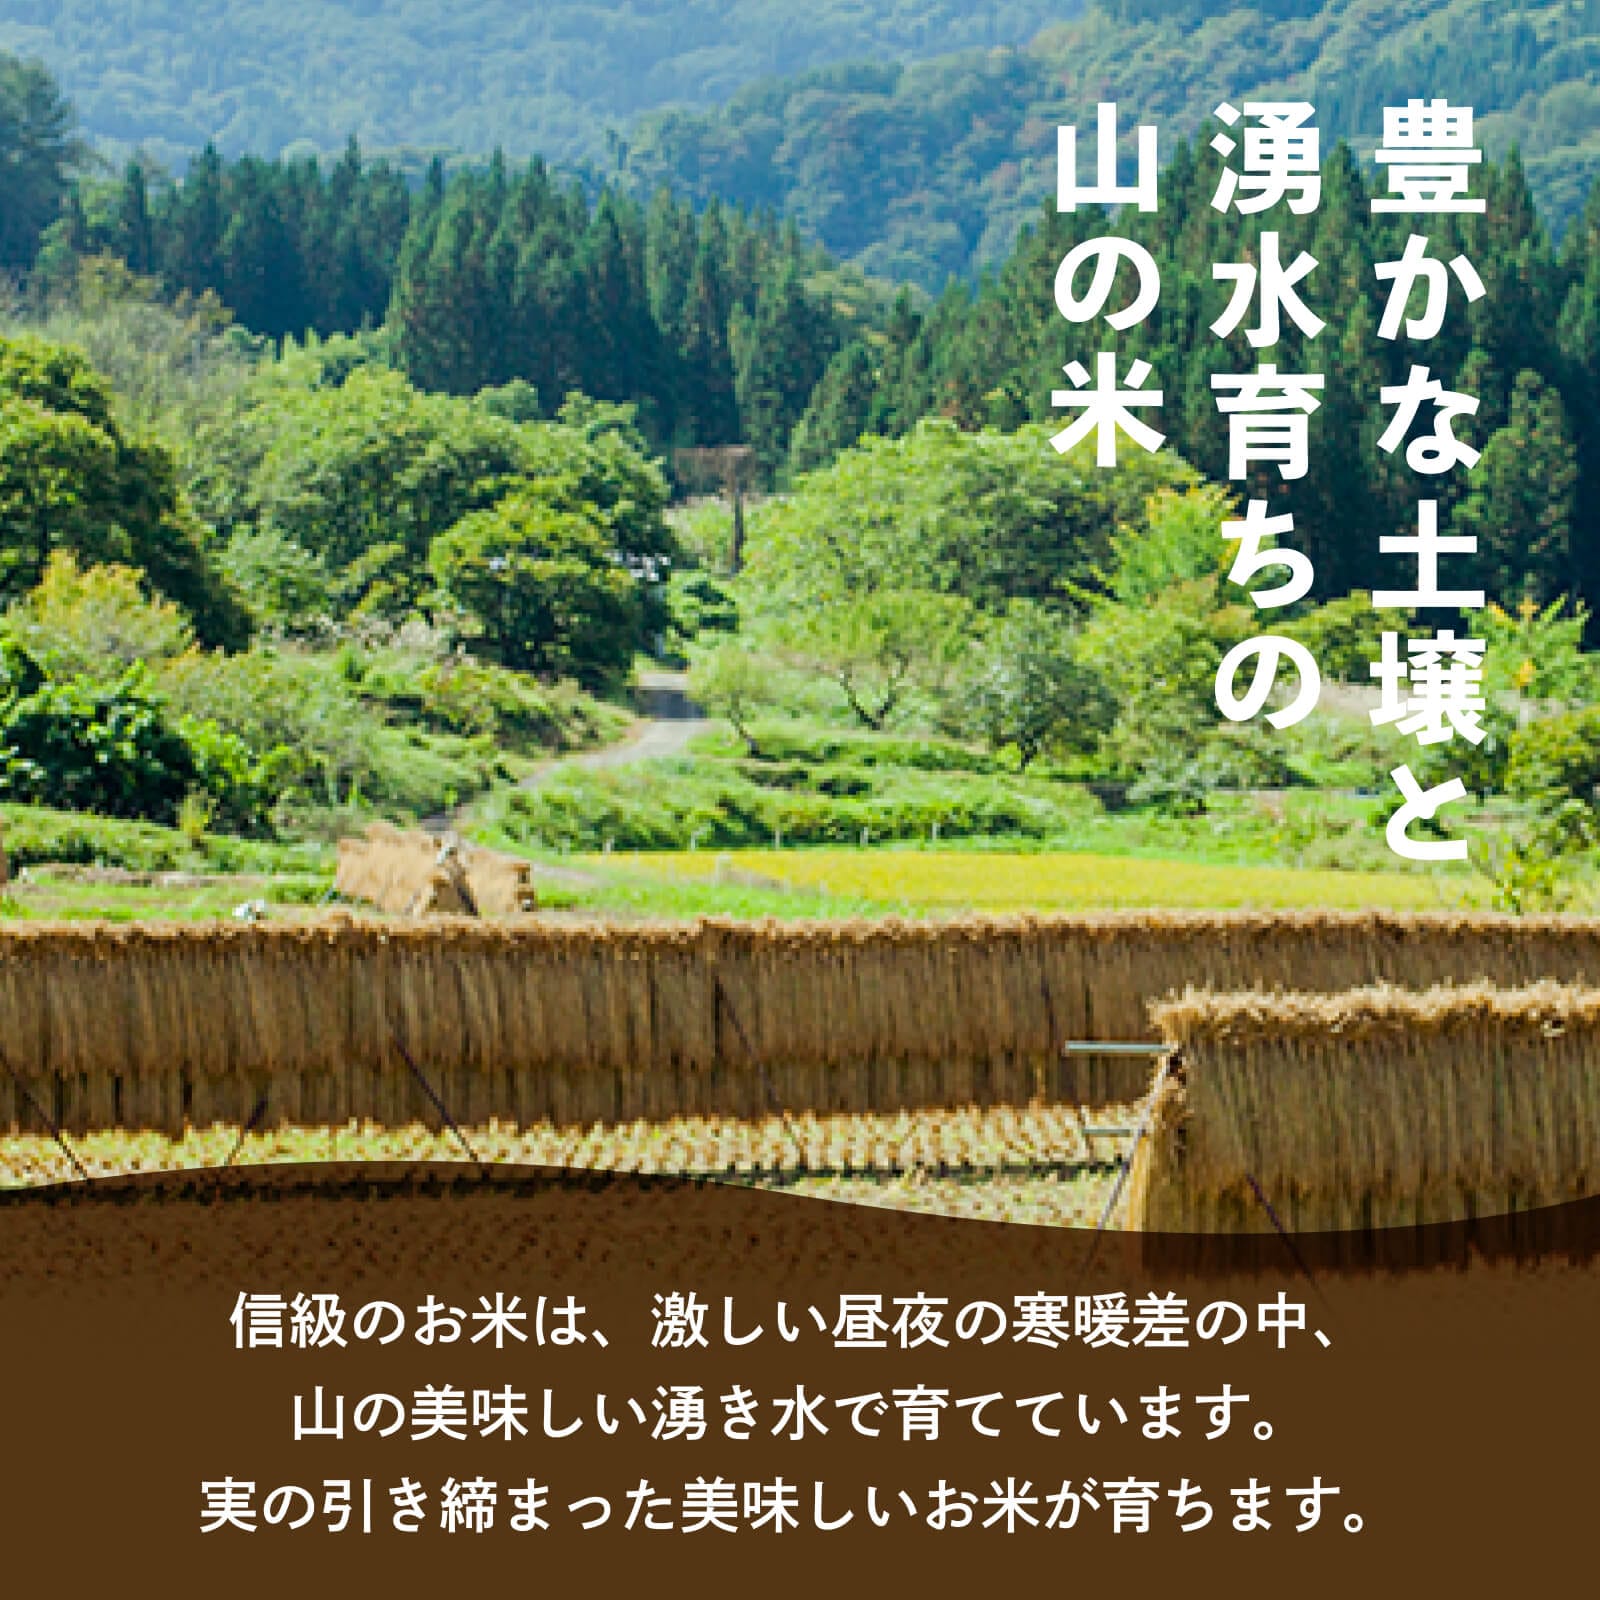 豊かな土壌と湧水育ちの山の米